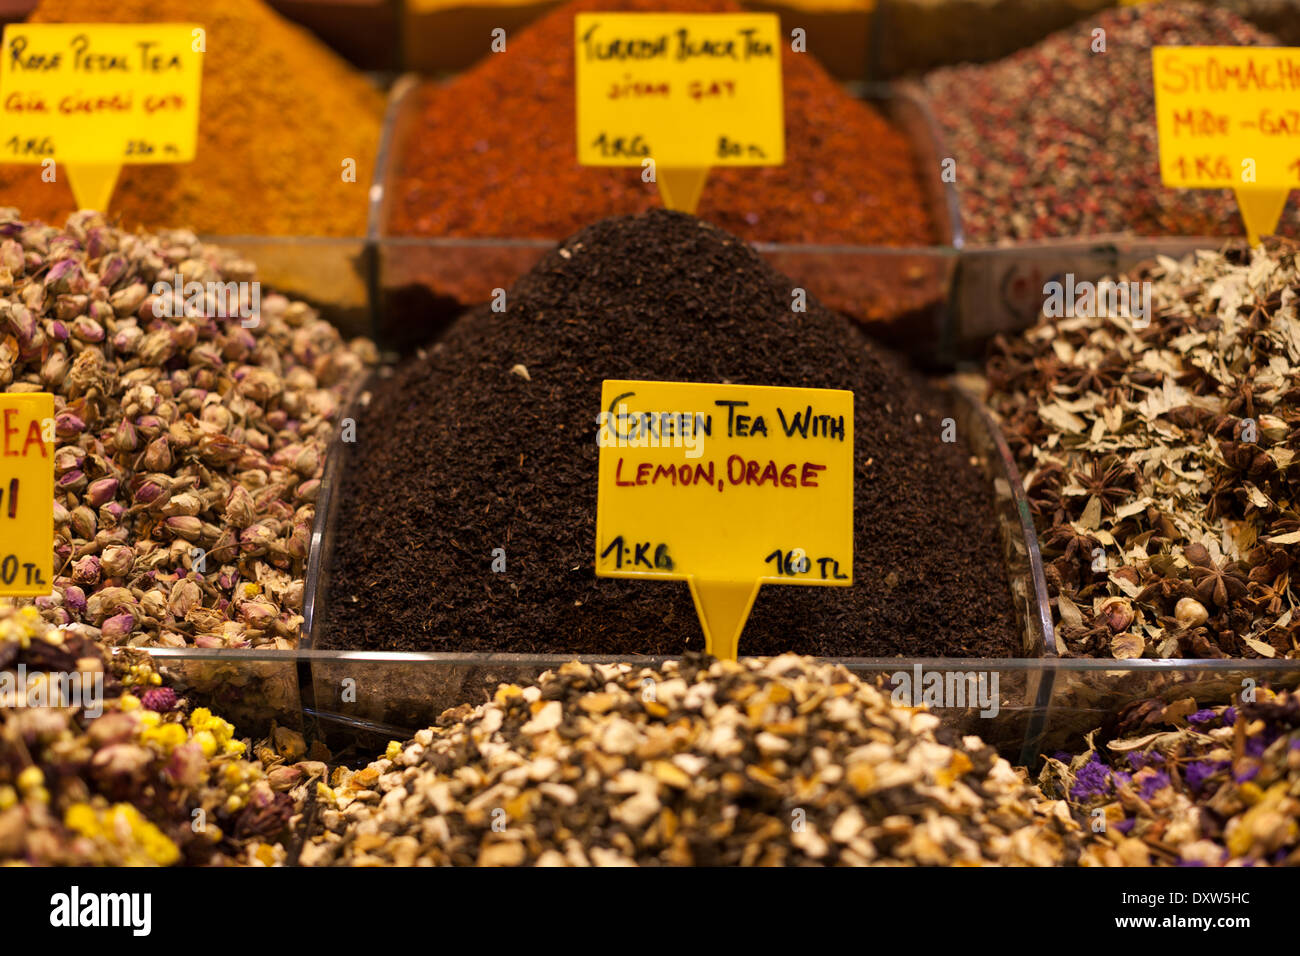 Tea mixtures in turkish market stall Stock Photo